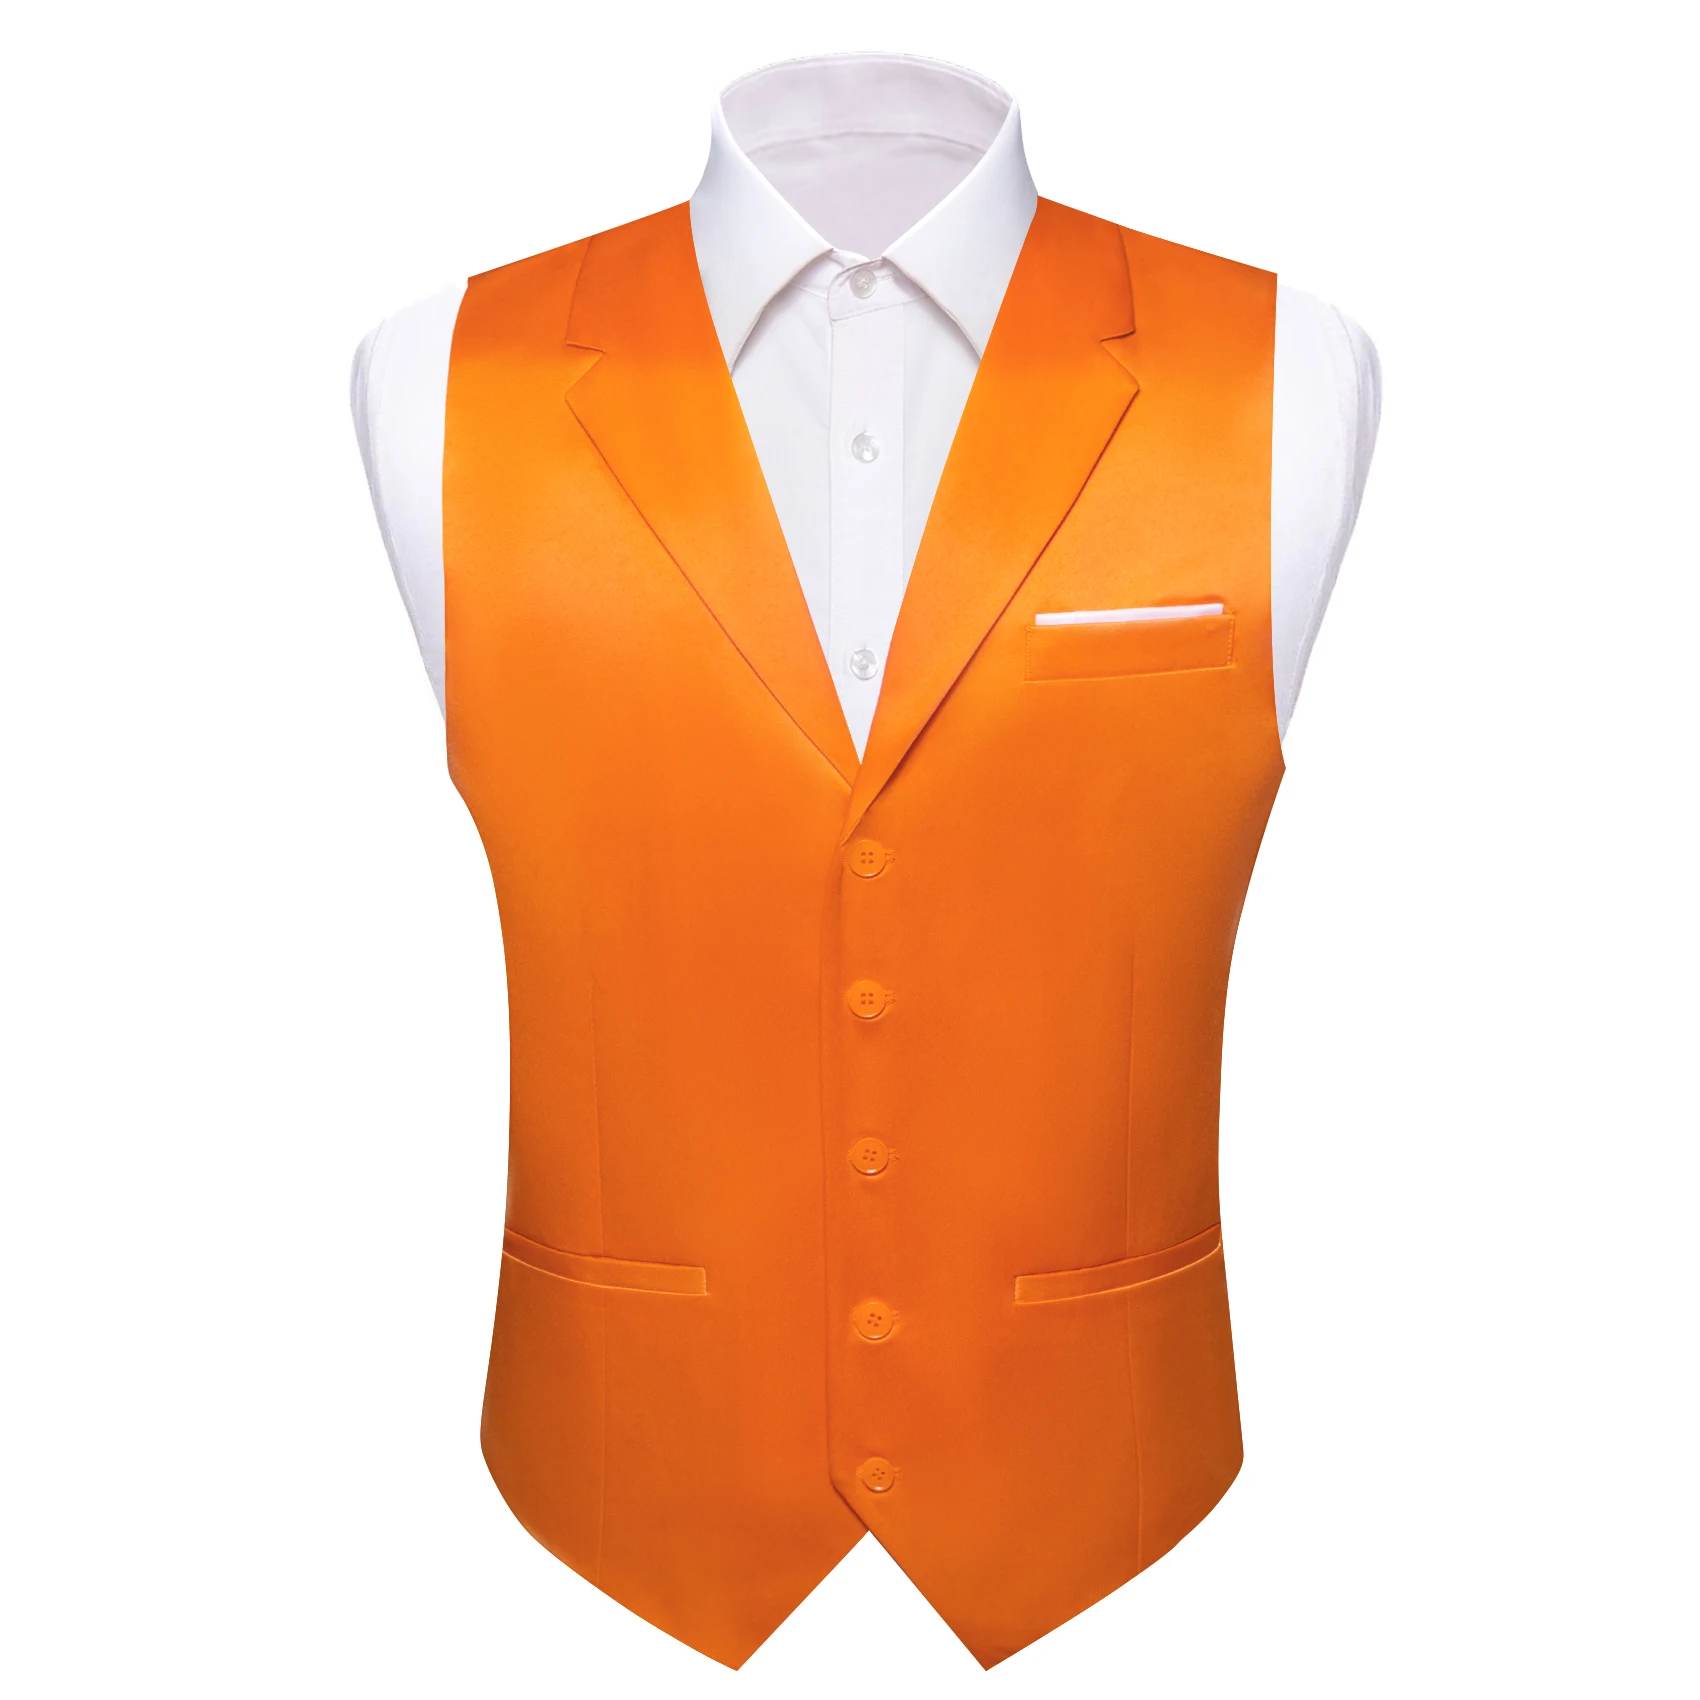 Мужской Шелковый жилет Barry Wang, однотонный оранжевый, синий, красный жилет, свадебный плащ, деловое платье, смокинг, куртка без рукавов, 40 цветов